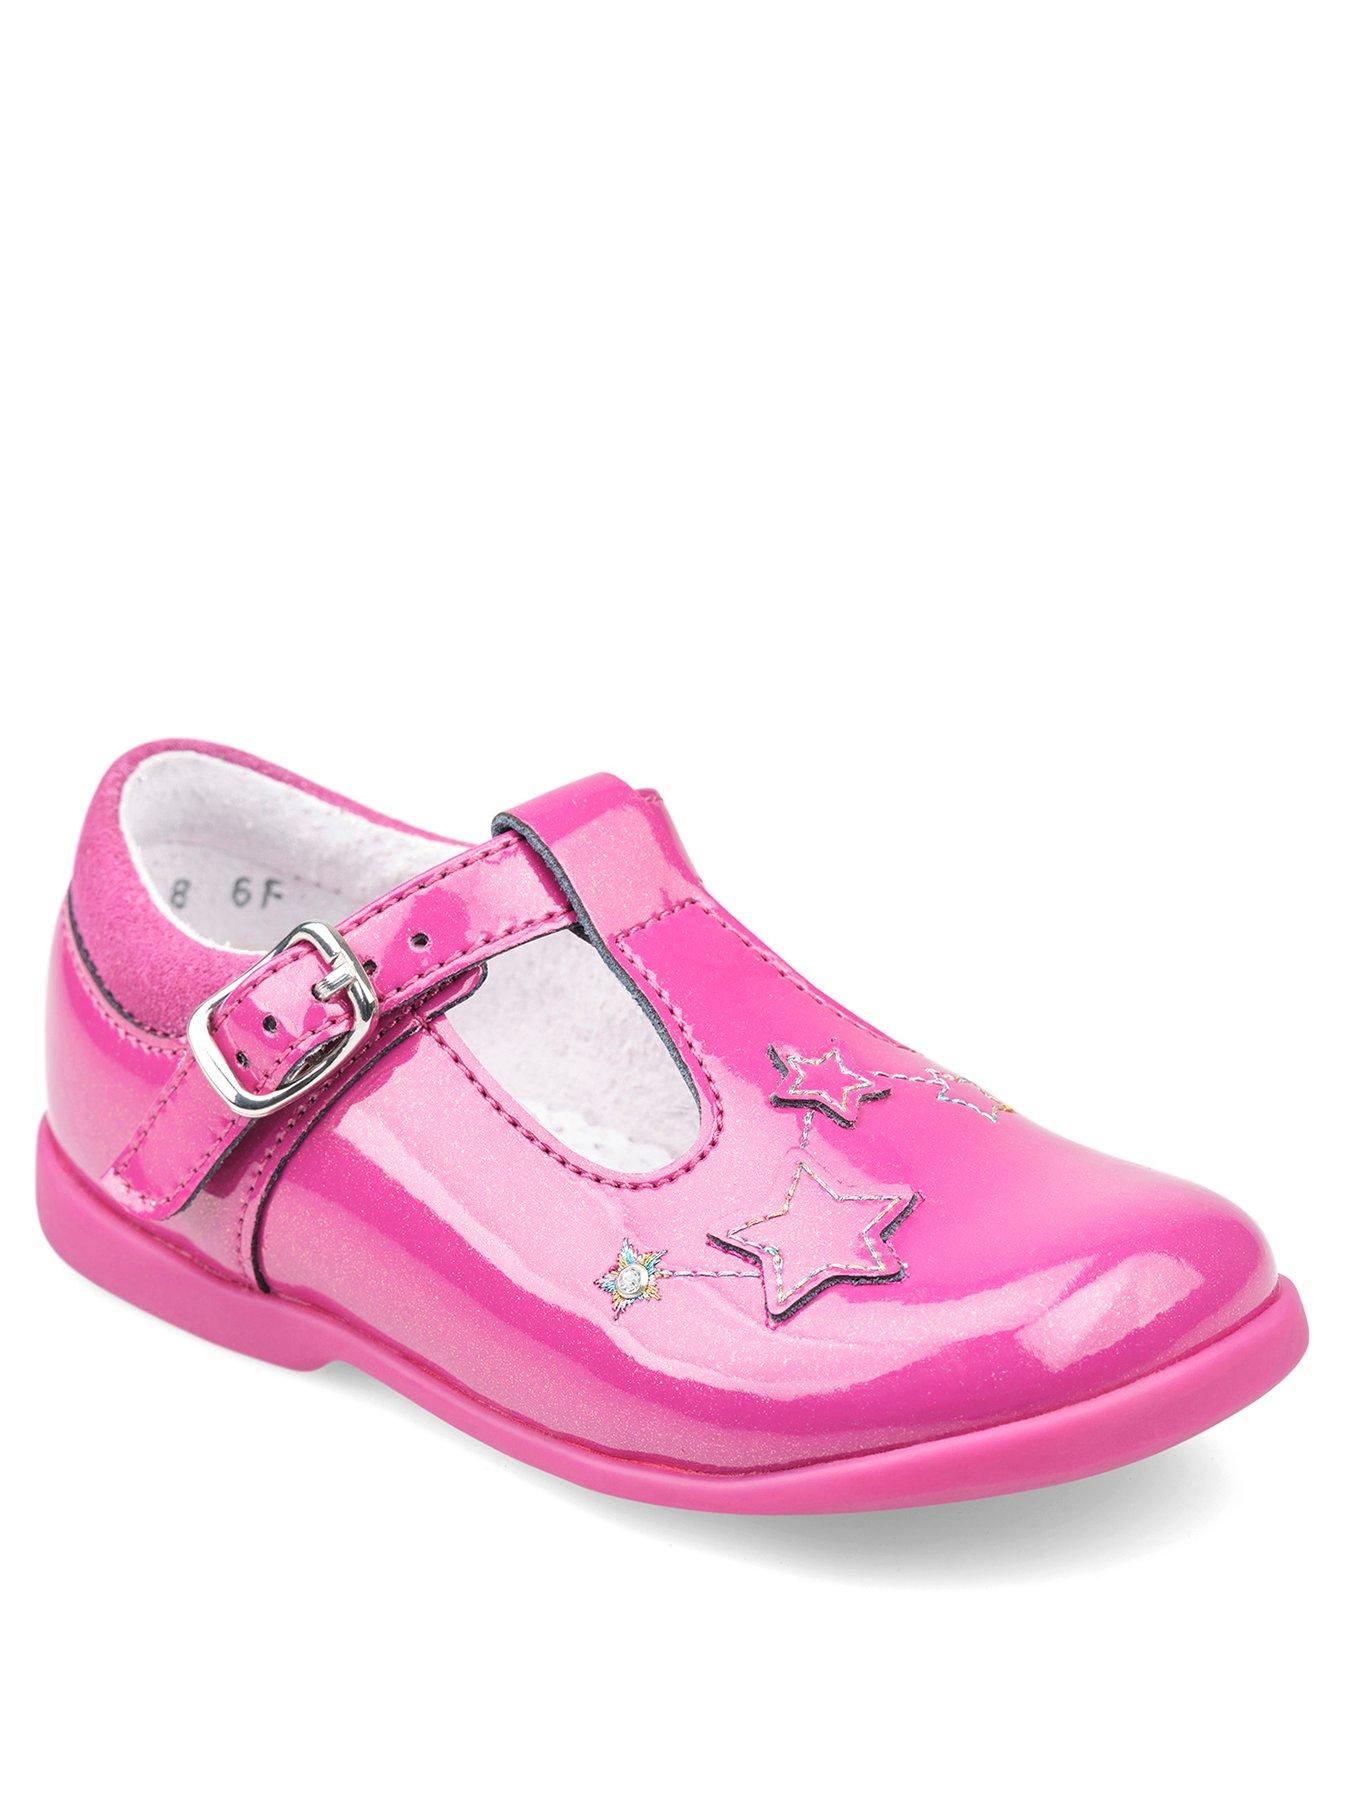 Kids Girls Star Gaze T-Bar Shoes - Berry